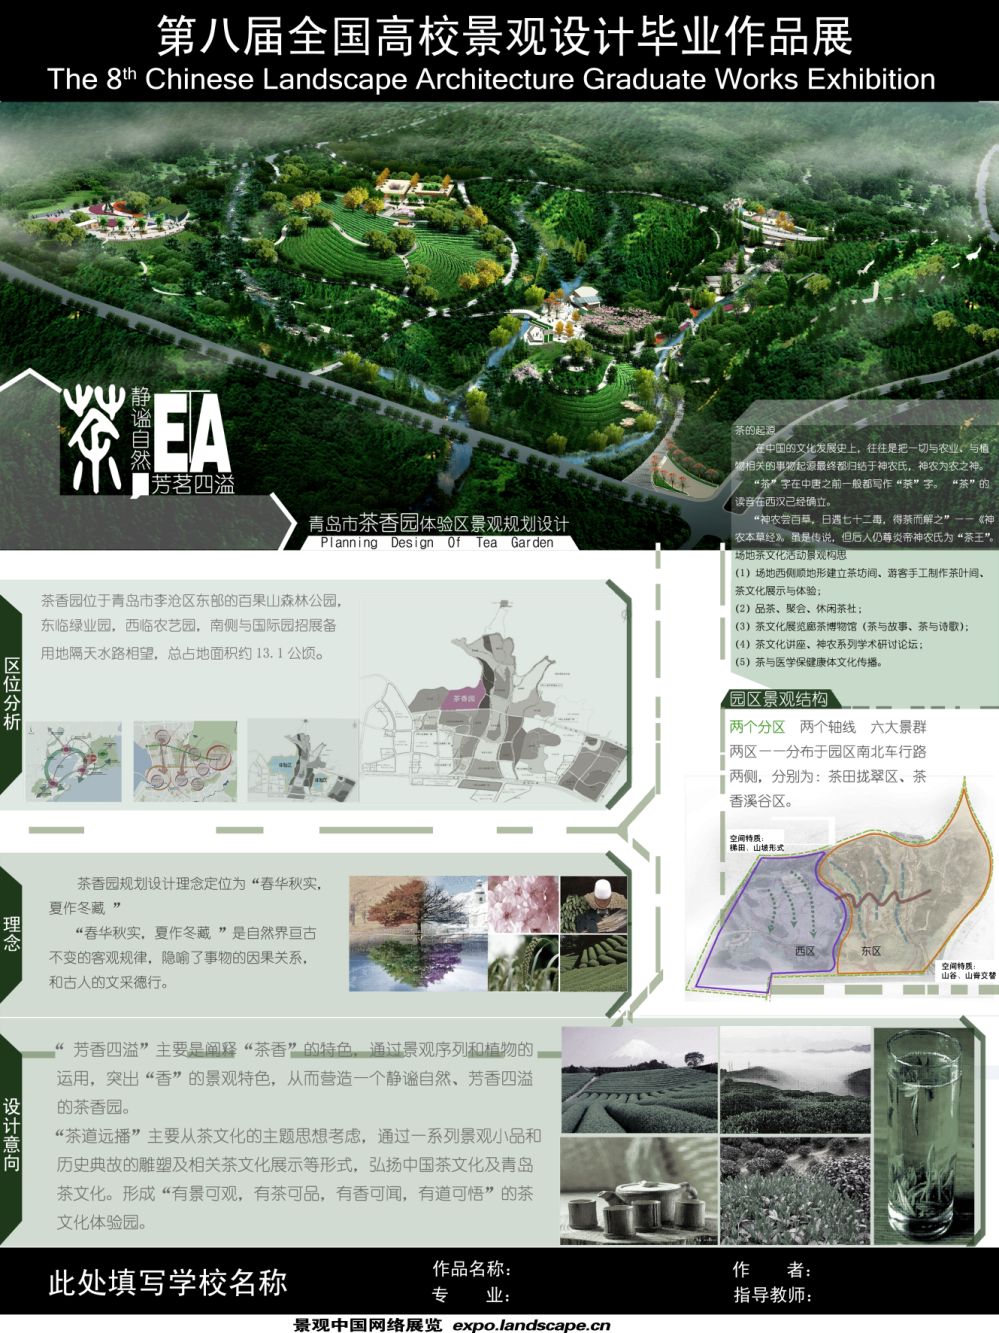 青岛市茶香园体验区景观规划设计-1